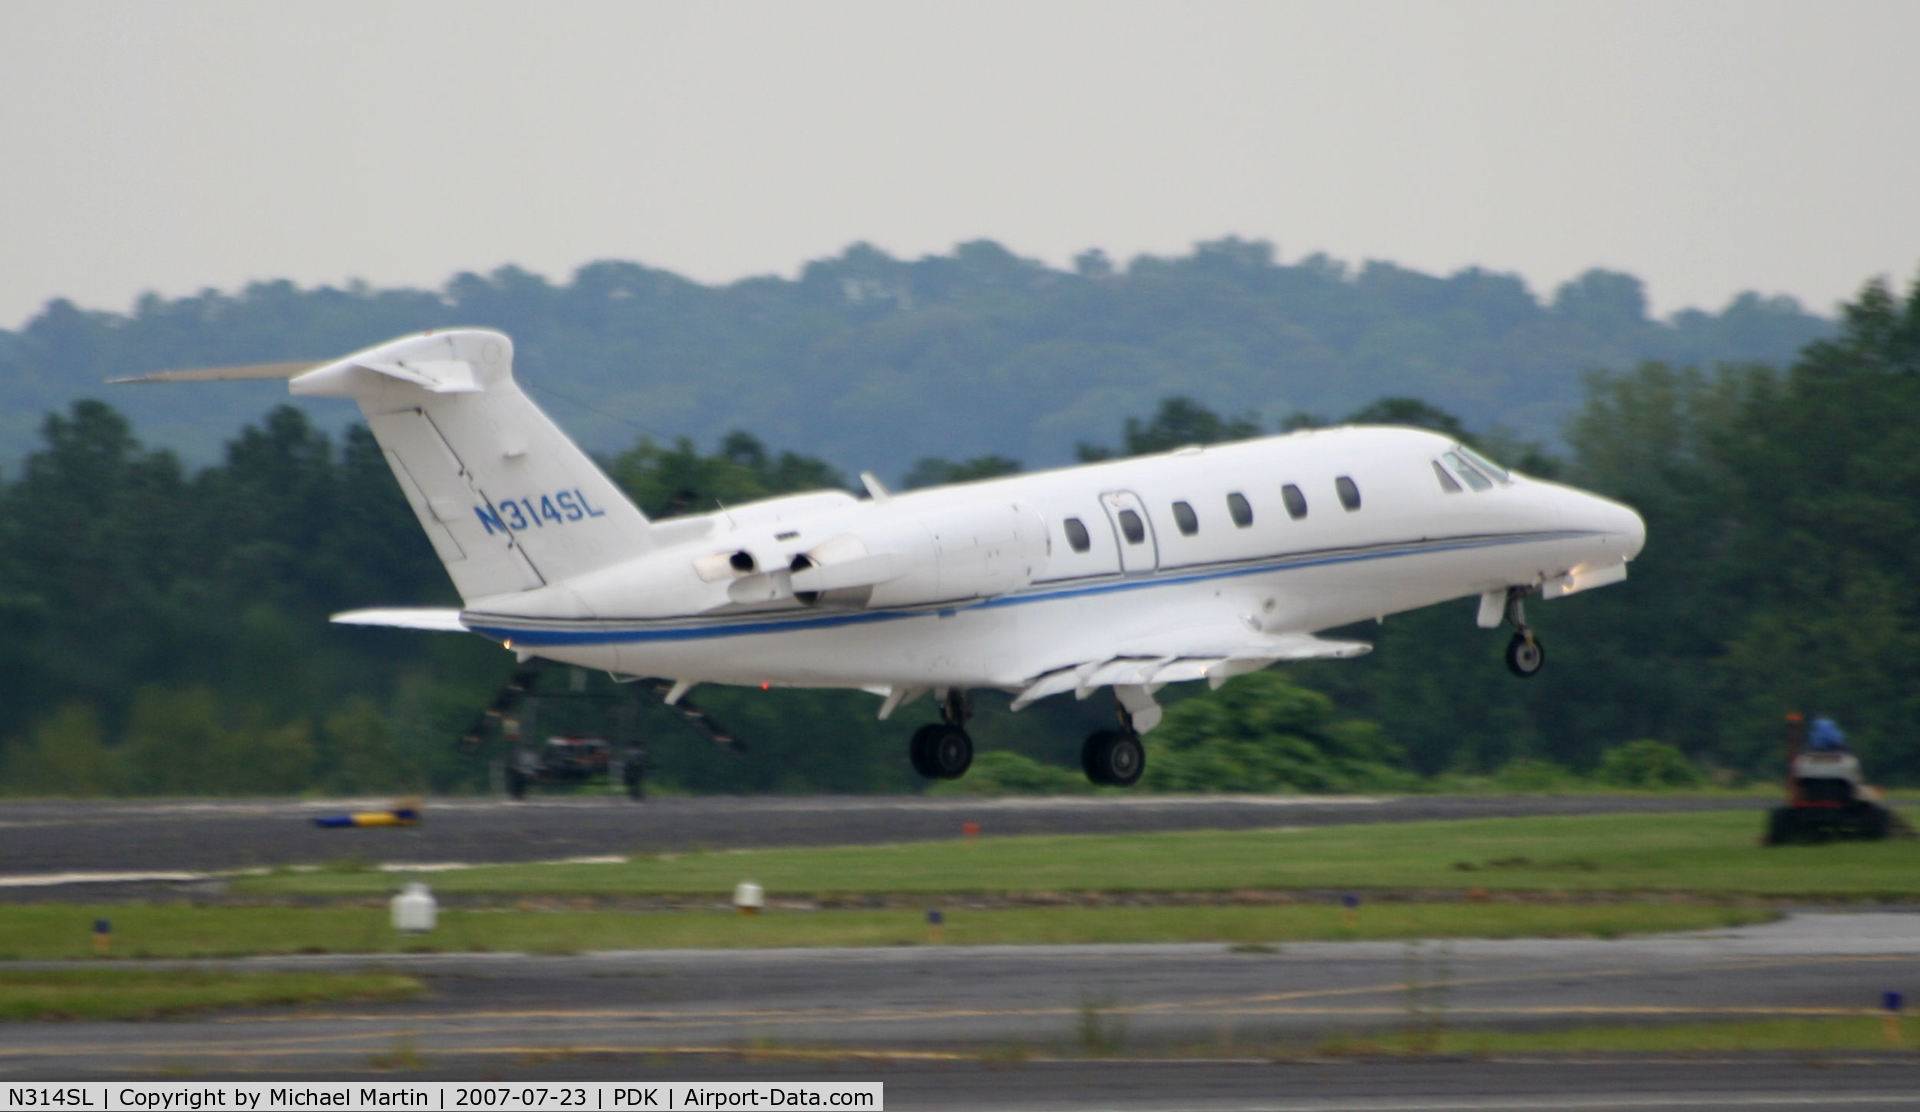 N314SL, 2000 Cessna 650 C/N 650-7115, Departing PDK enroute to SUS